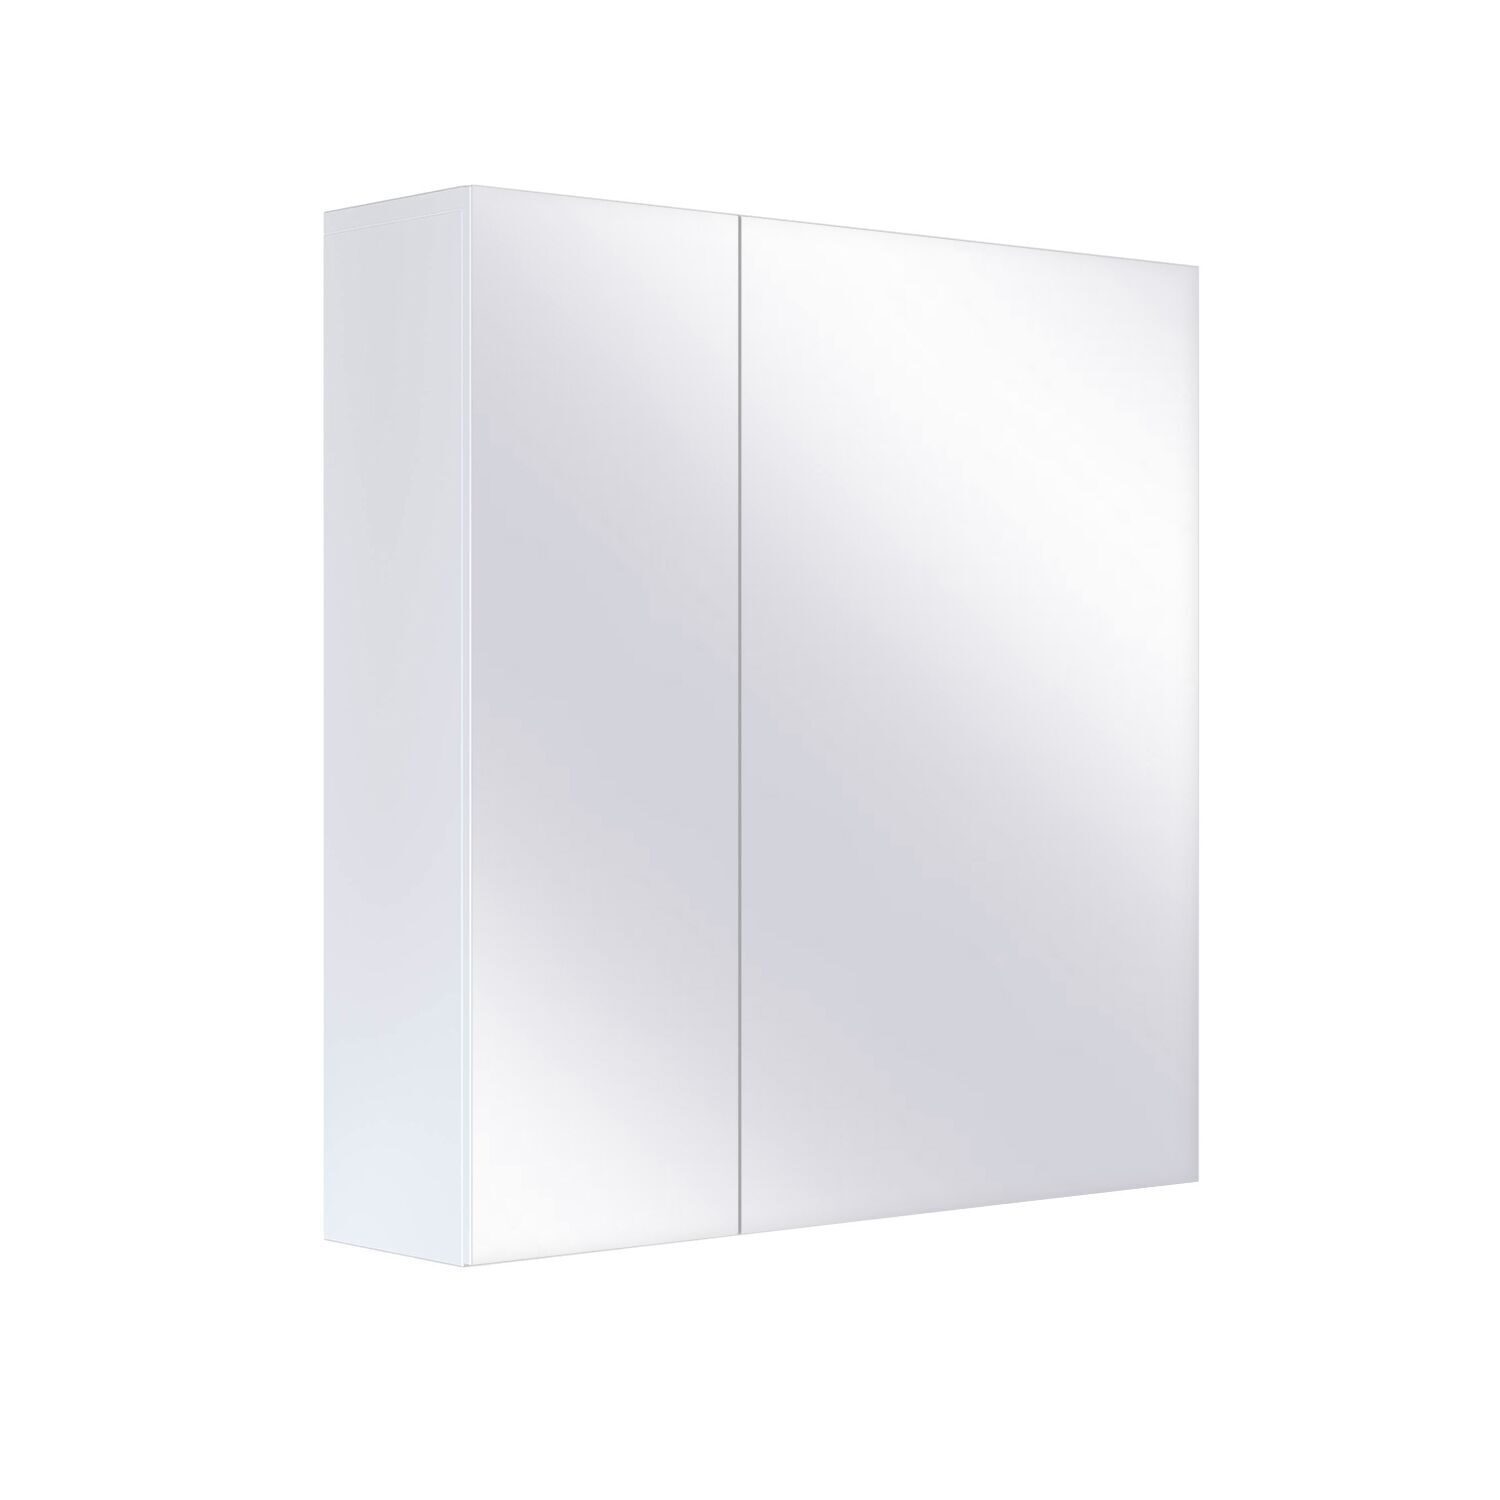 Шкаф зеркальный SanStar Универсальный 70 без подсветки инструментальный шкаф практик тс 1095 021010 s30599520246